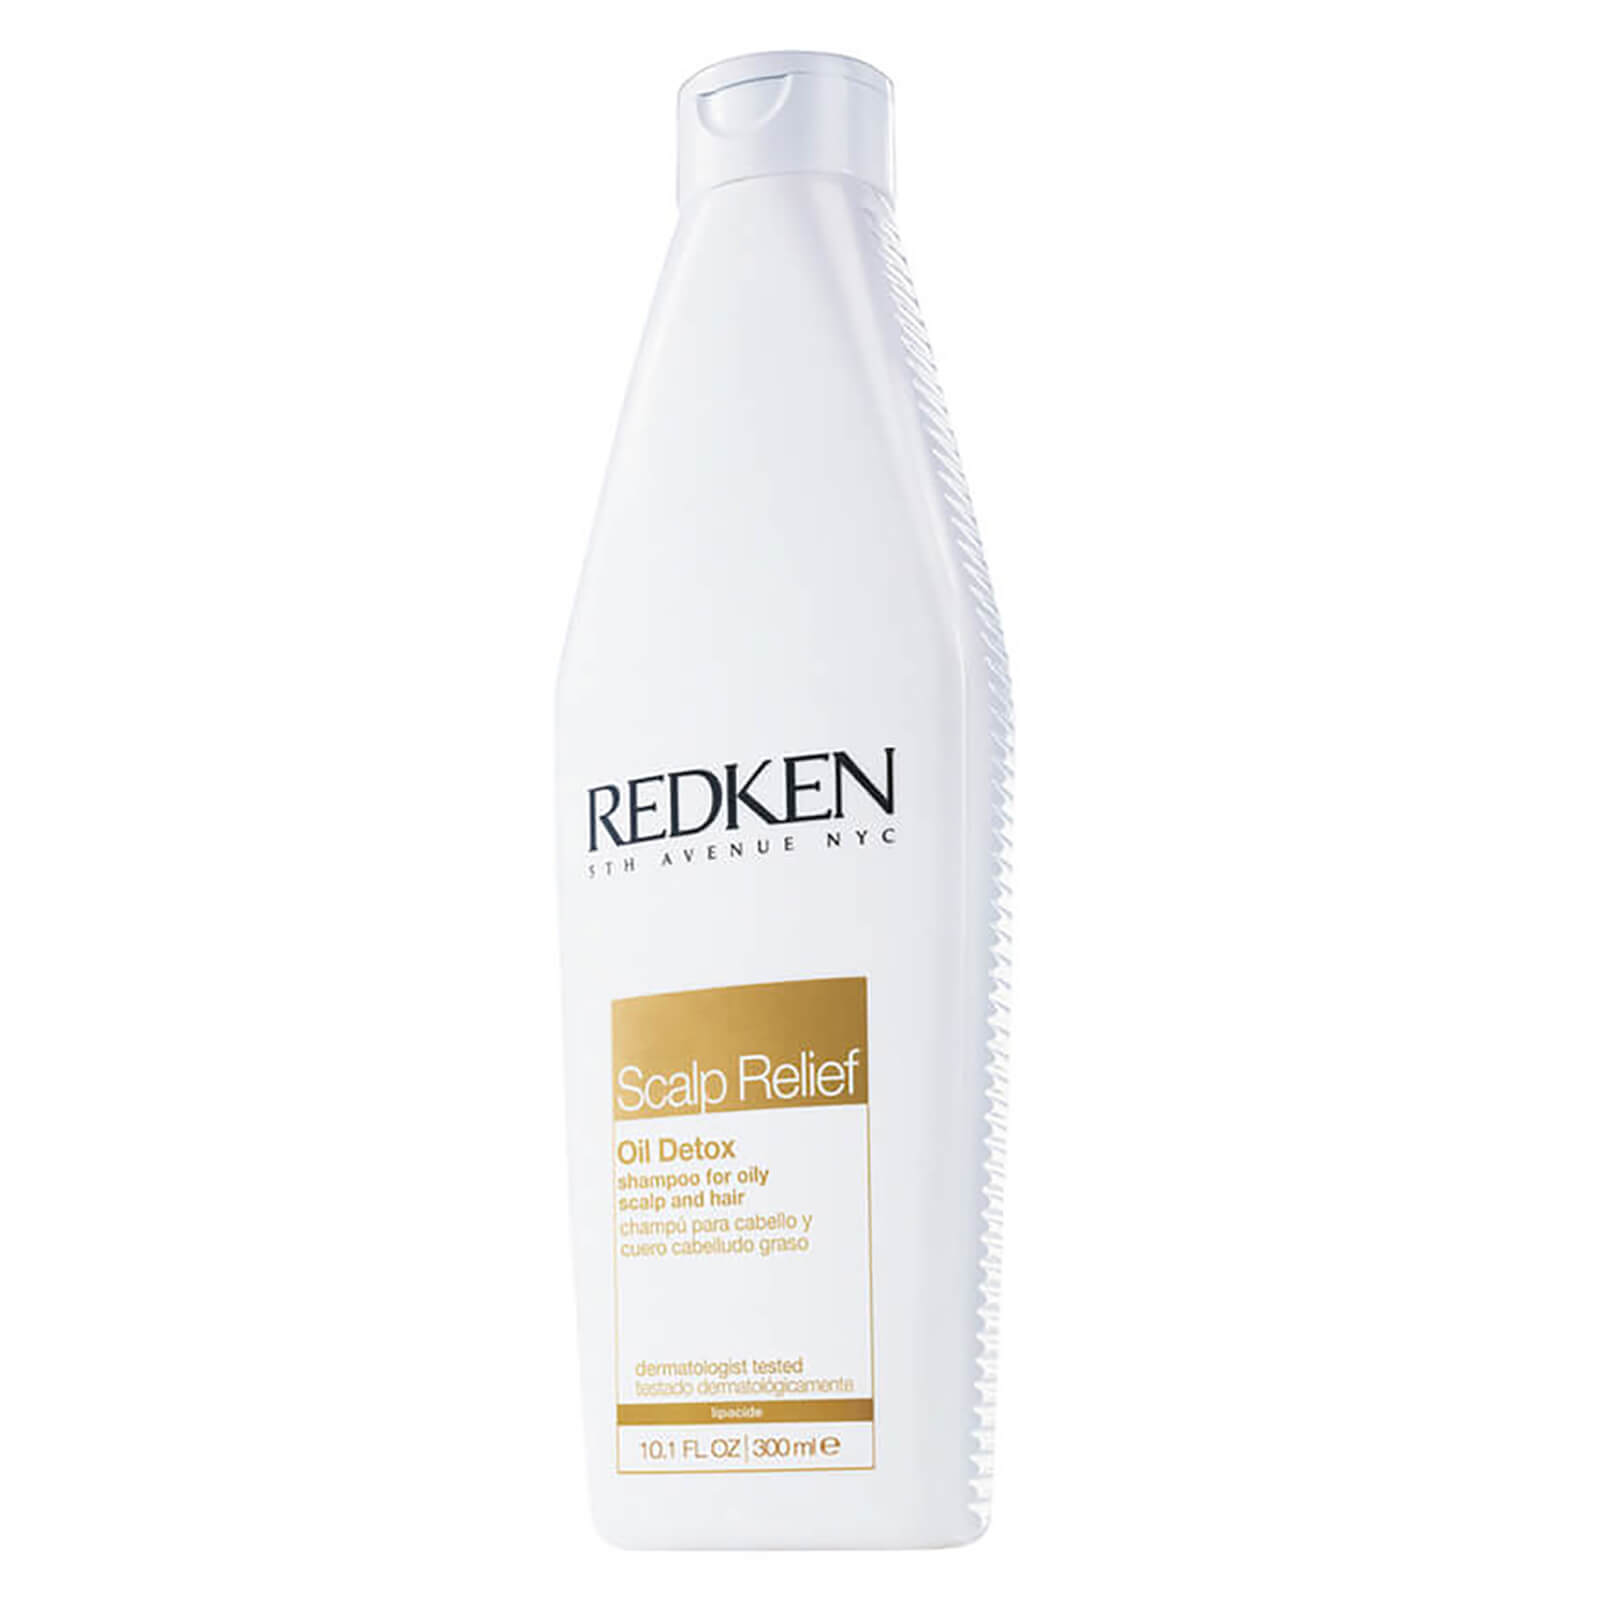 Champú purificante cuero cabelludo graso Redken Scalp Relief Oil Detox 300ml